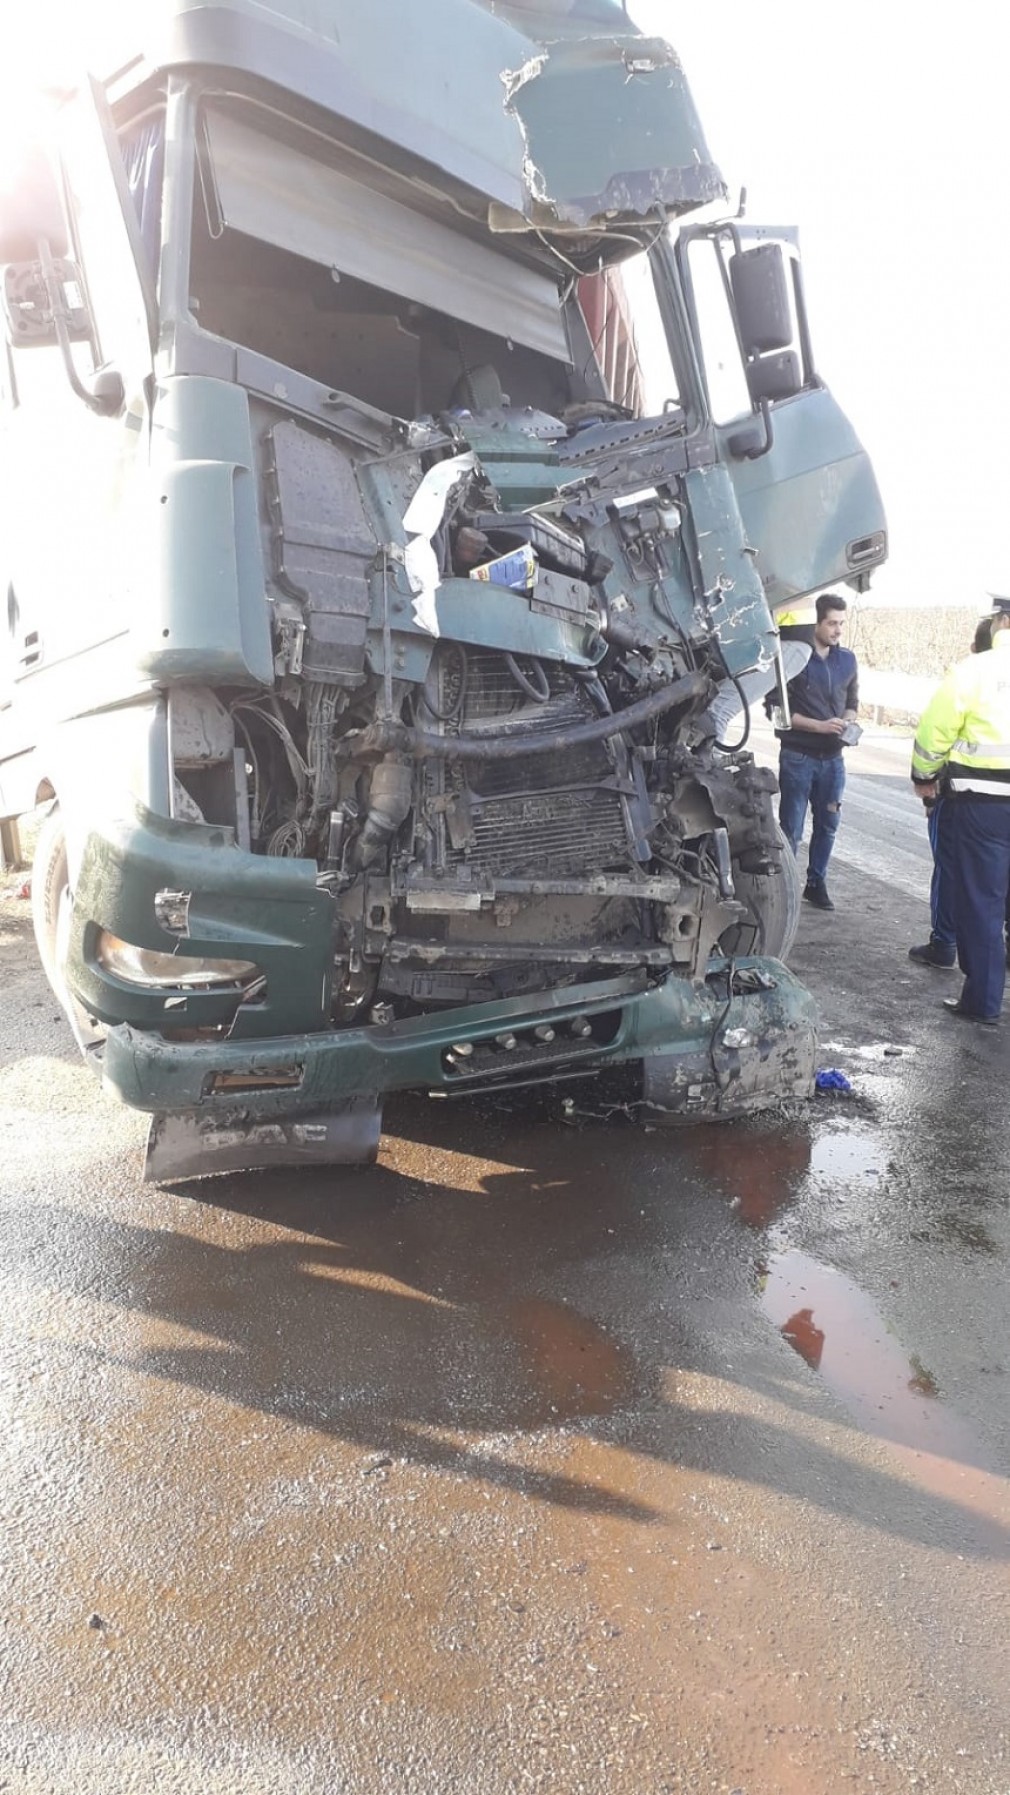 Grav accident cu două camioane în Hunedoara